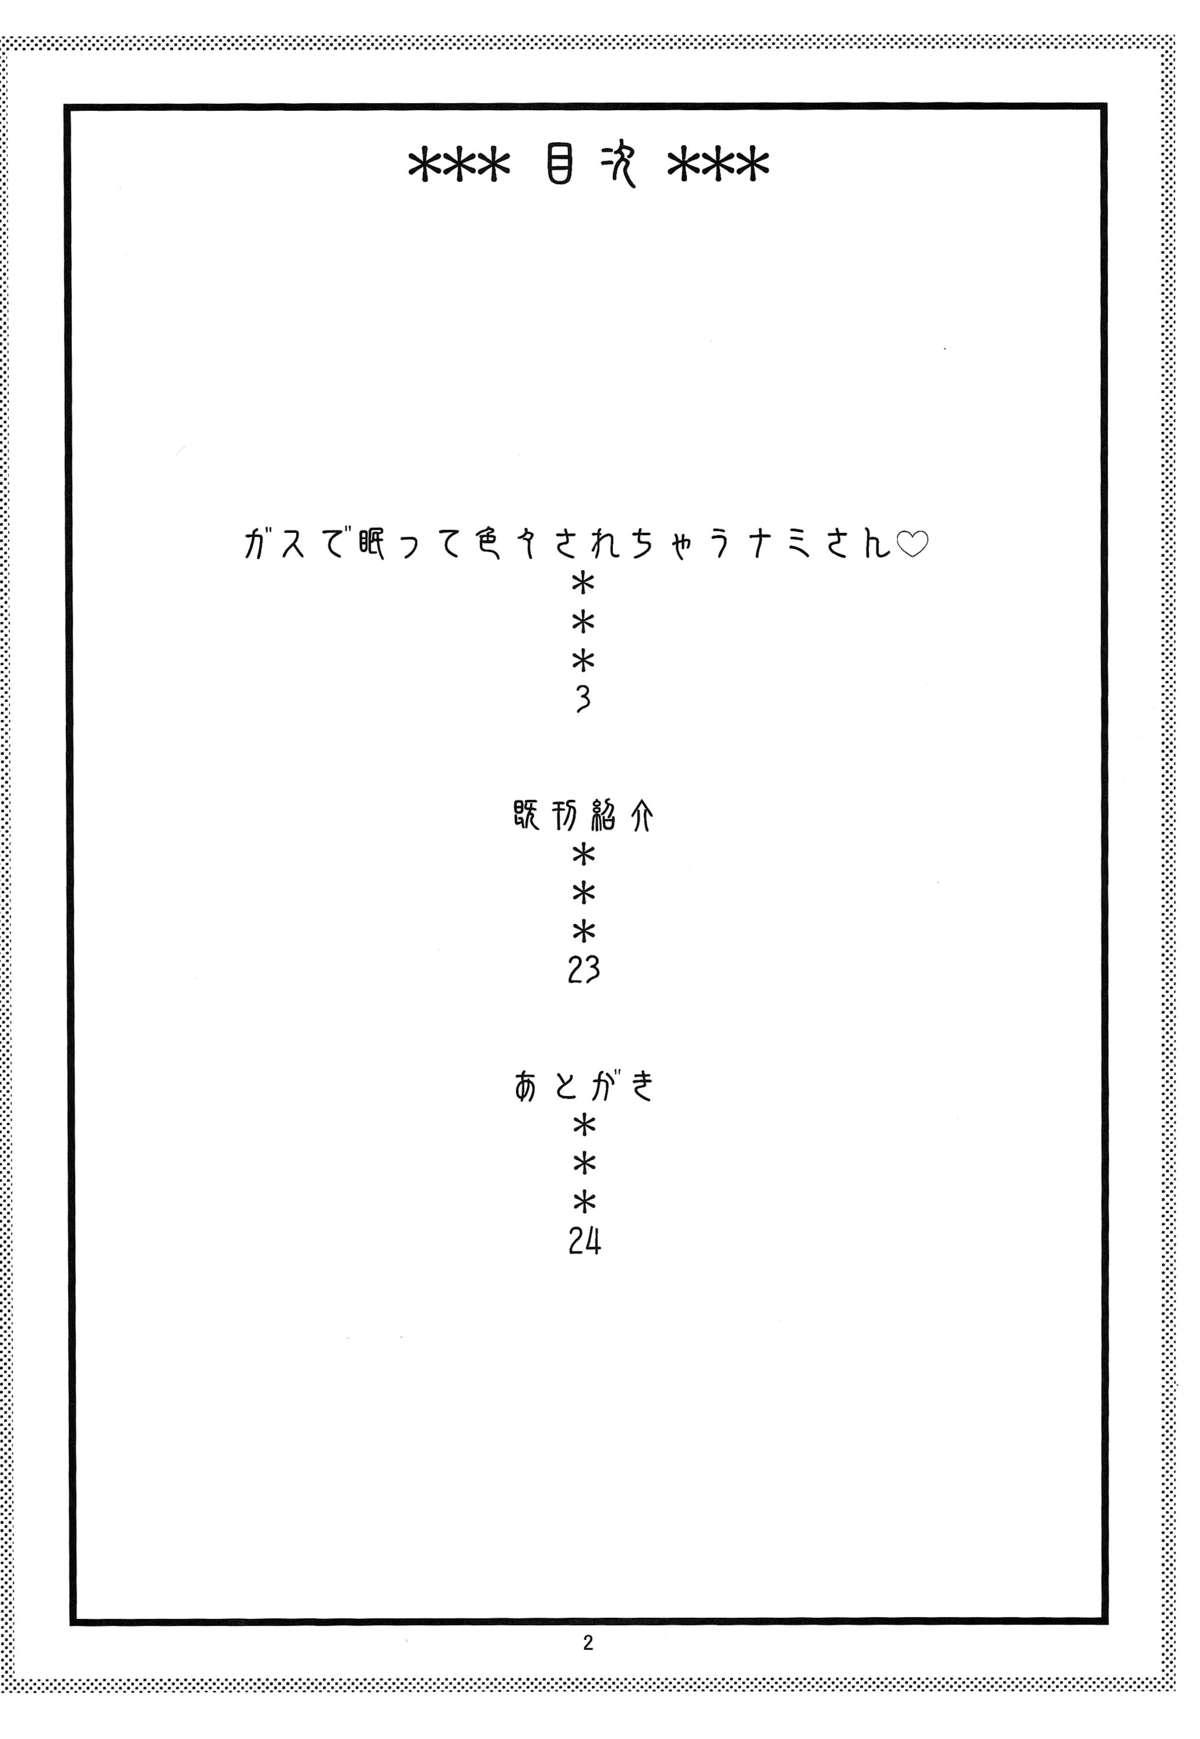 Teenage Nami no Ura Koukai Nisshi 7 - One piece Furry - Page 3